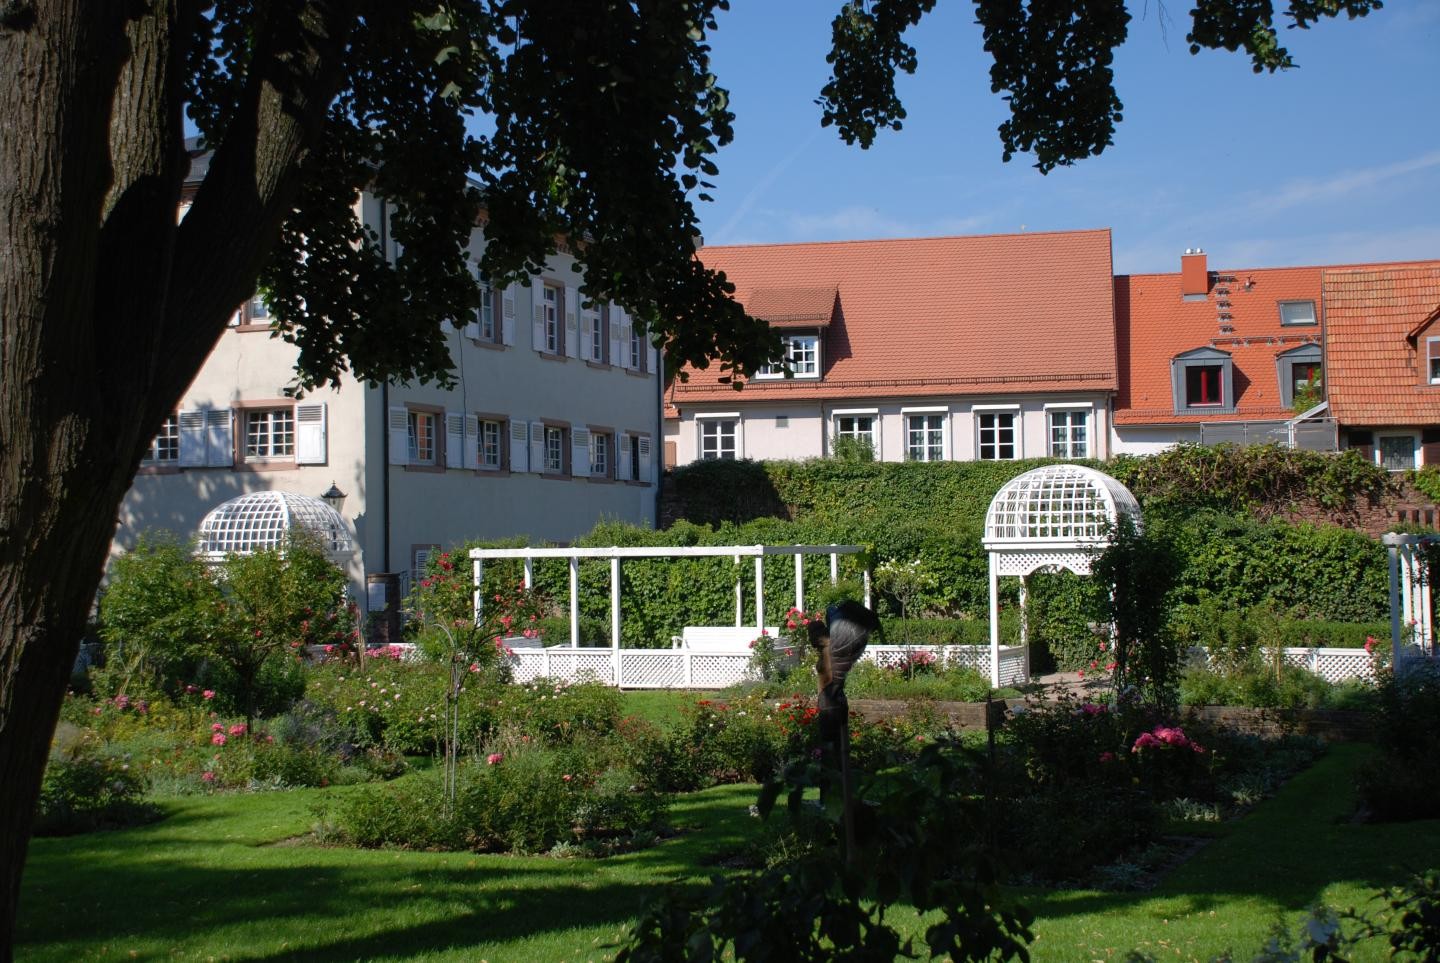 Rosengarten mit Pavillon und Gebäuden im Hintergrund